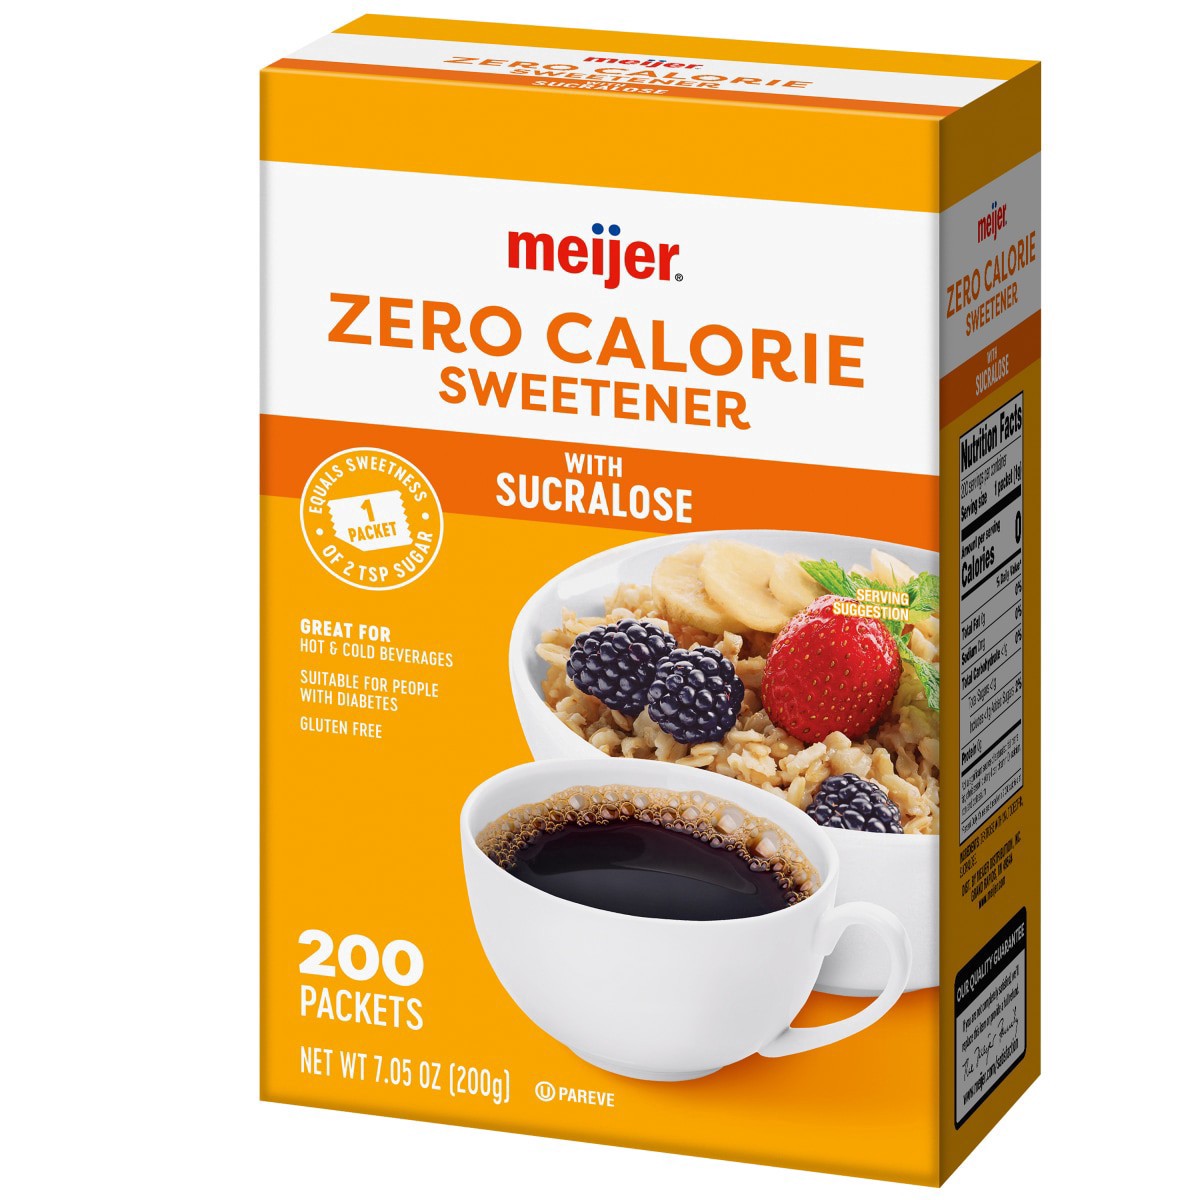 slide 9 of 29, Meijer Zero Calorie Sweetener with Sucralose, 200 ct